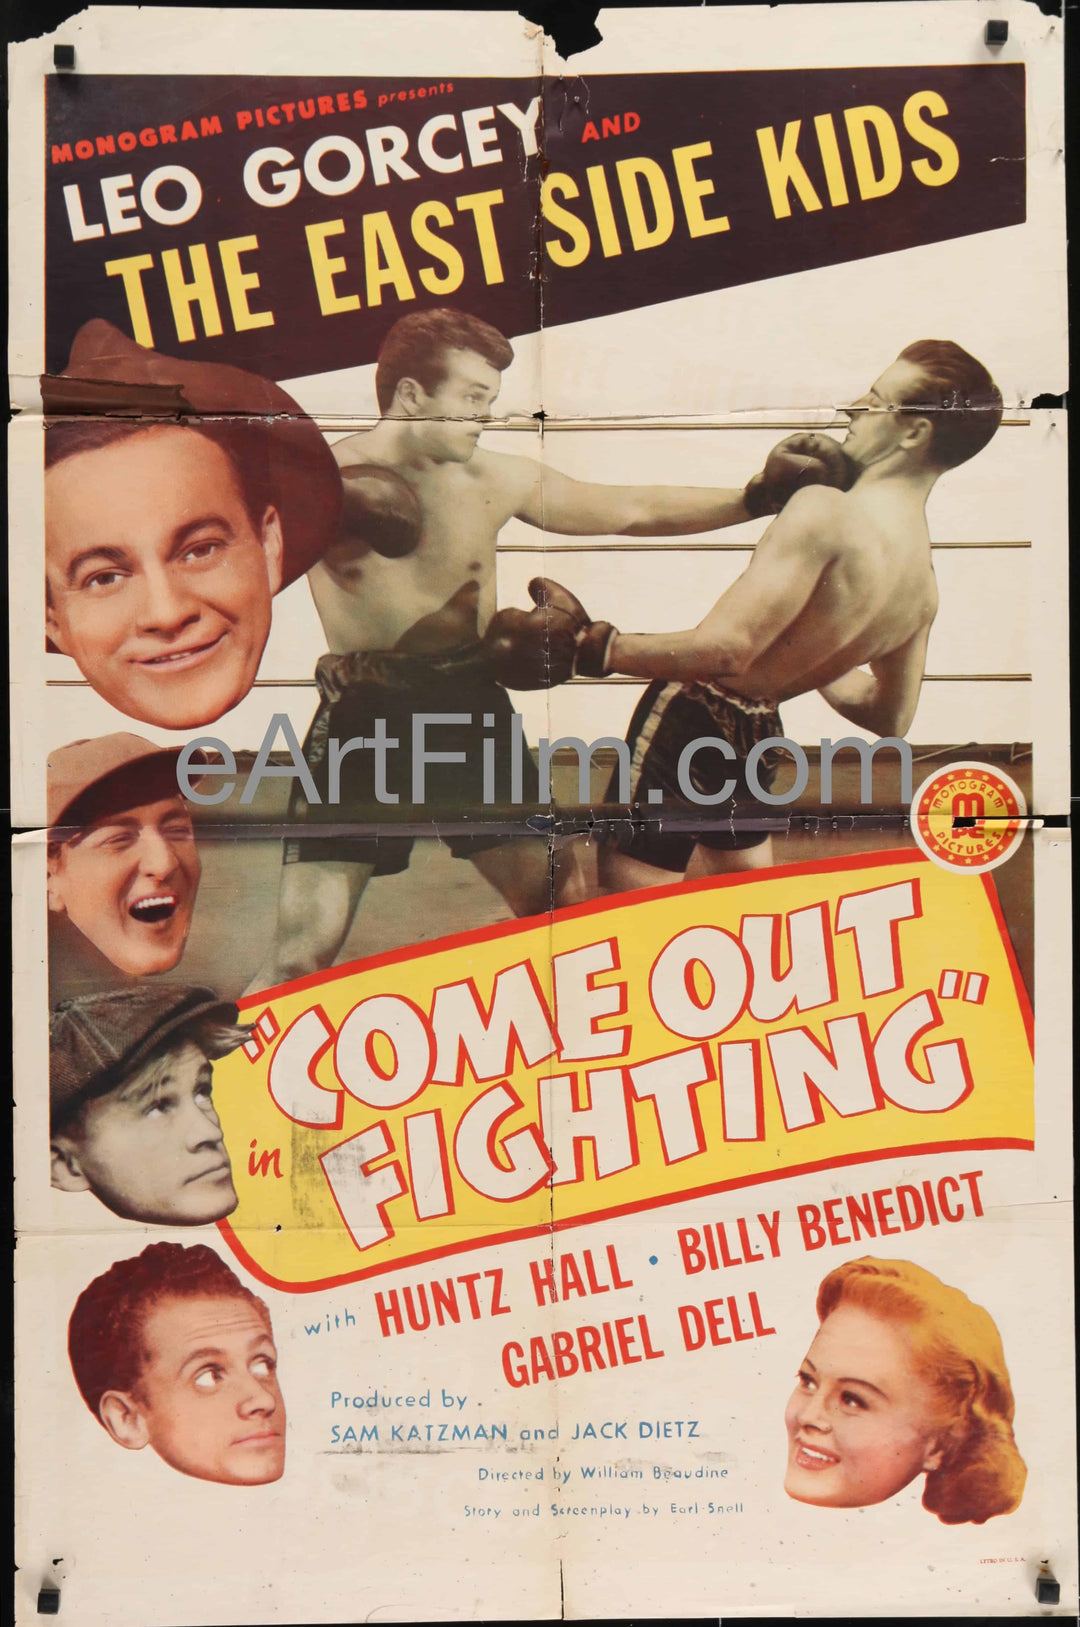 eArtFilm.com U.S One Sheet (27"x41") Come Out Fighting-East Side Kids-Leo Gorcey-Huntz Hall-boxing comedy-1945-27x41